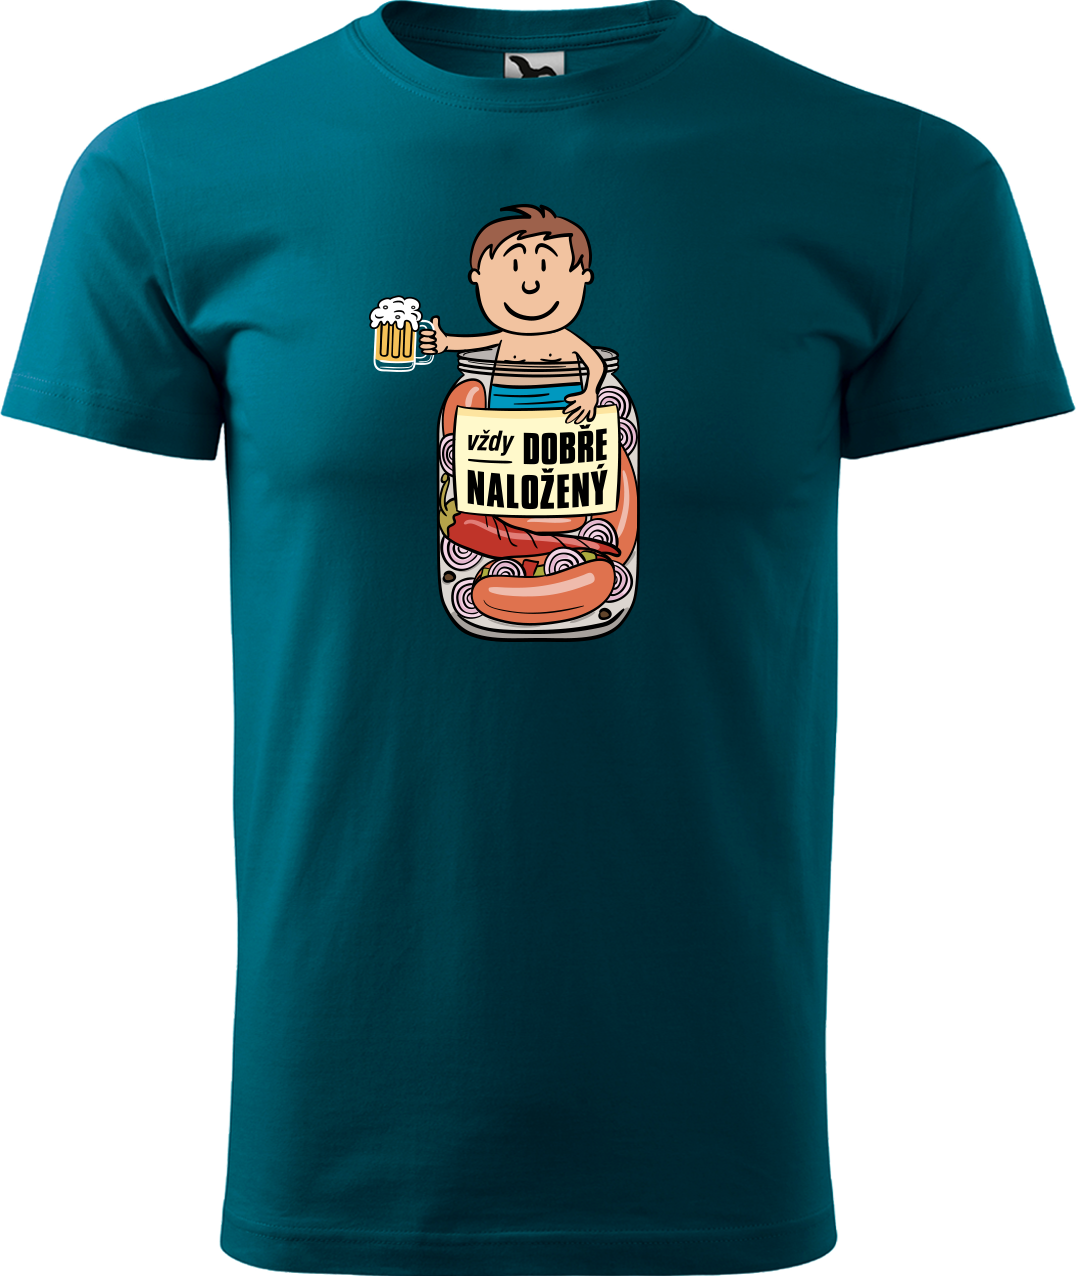 Vtipné tričko - Vždycky dobře naložený Velikost: L, Barva: Petrolejová (93)